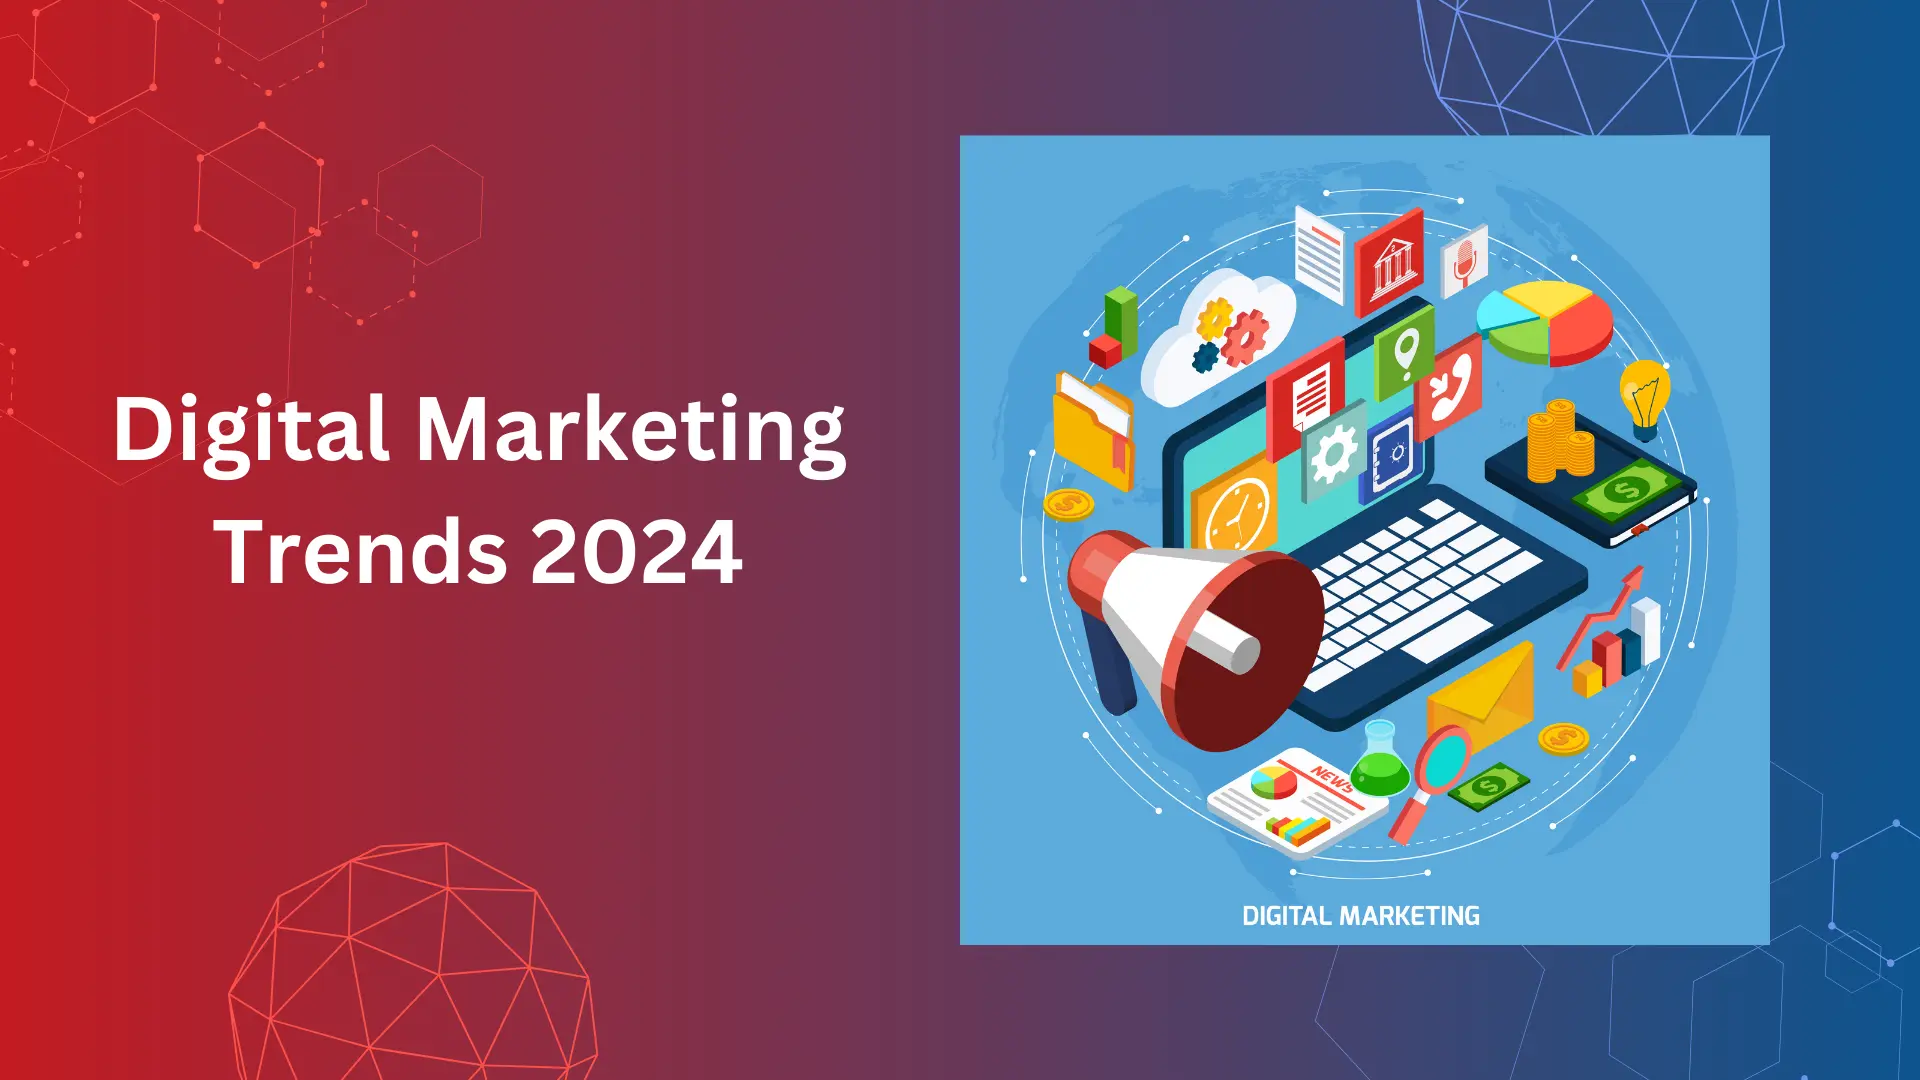 Digital Marketing Trends 2024